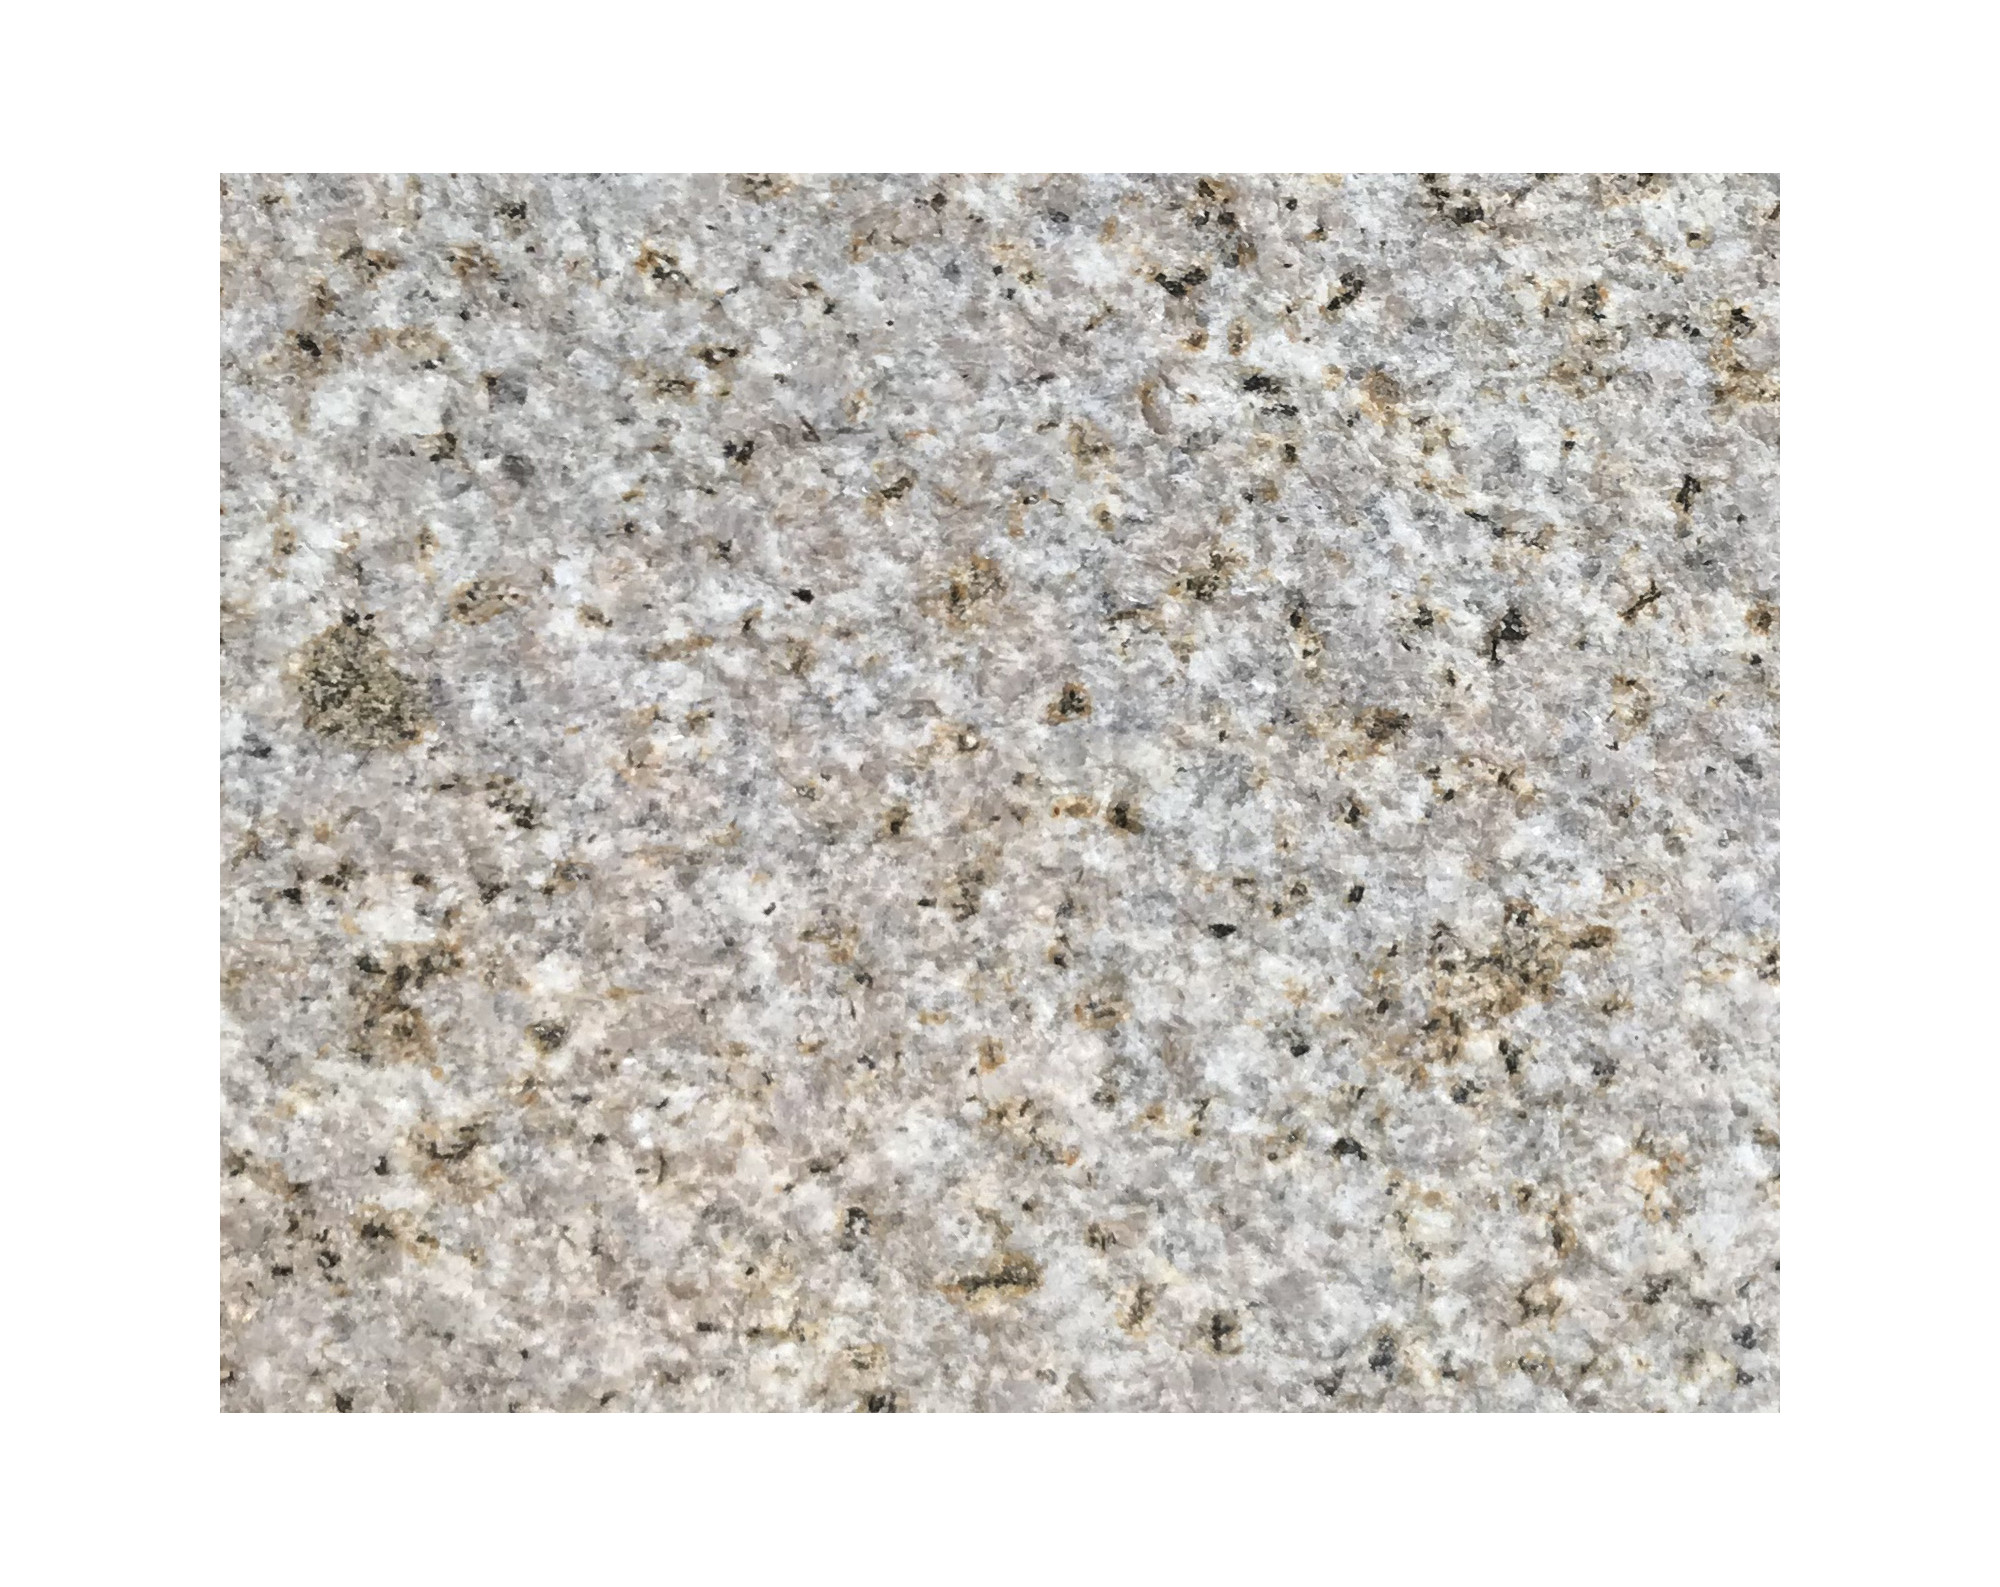 Harmo roc napoliset, natura-serie, ovaal d:3,00mx5,70m, zachtzand, graniet